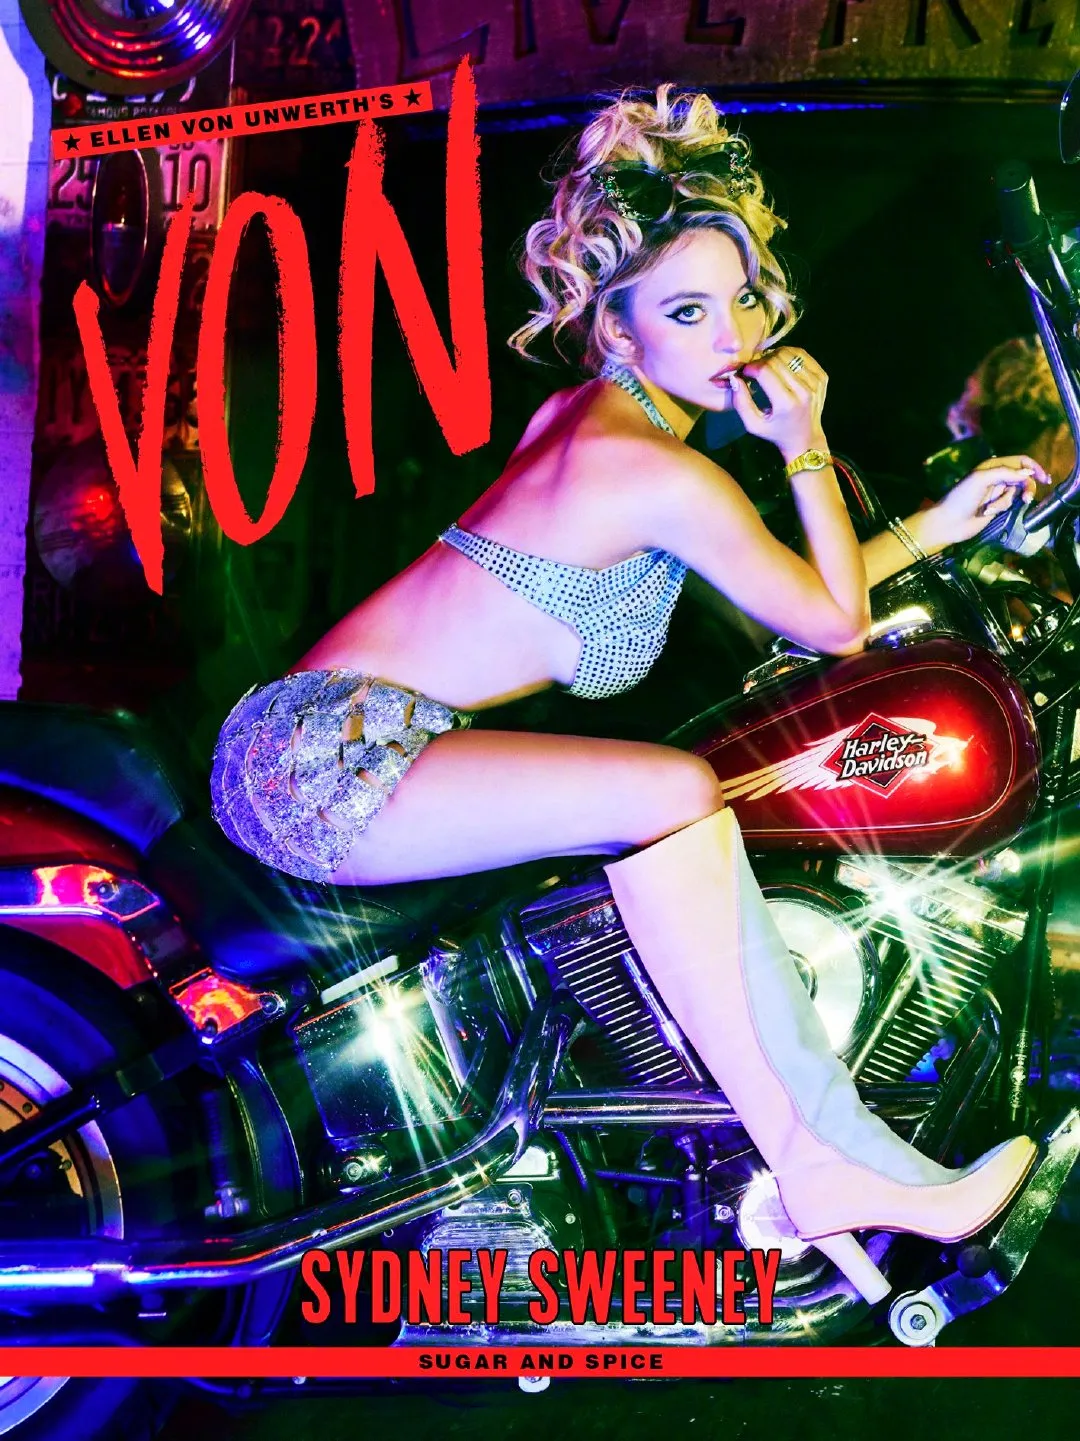 Sydney Sweeney, "VON" magazine July issue photo shoot | FMV6